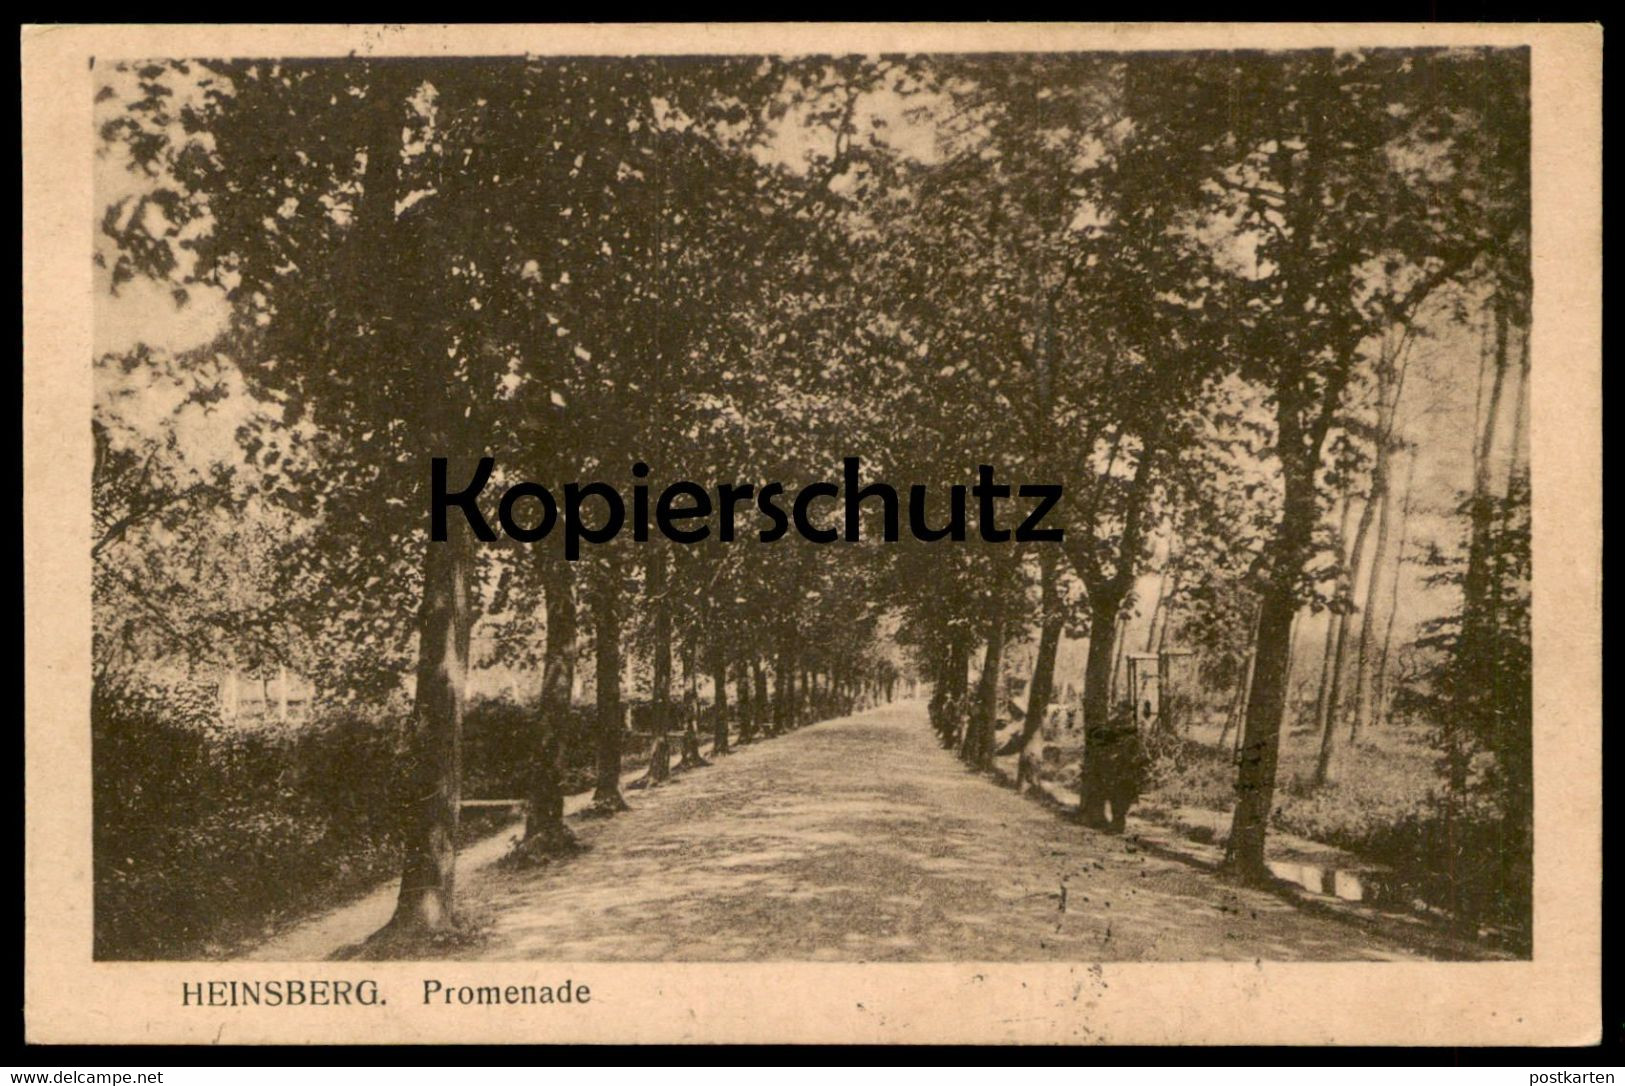 ALTE POSTKARTE HEINSBERG PROMENADE Allee Alley Baum Arbre Tree Cpa Postcard Ansichtskarte AK Belgische Militärpost - Heinsberg